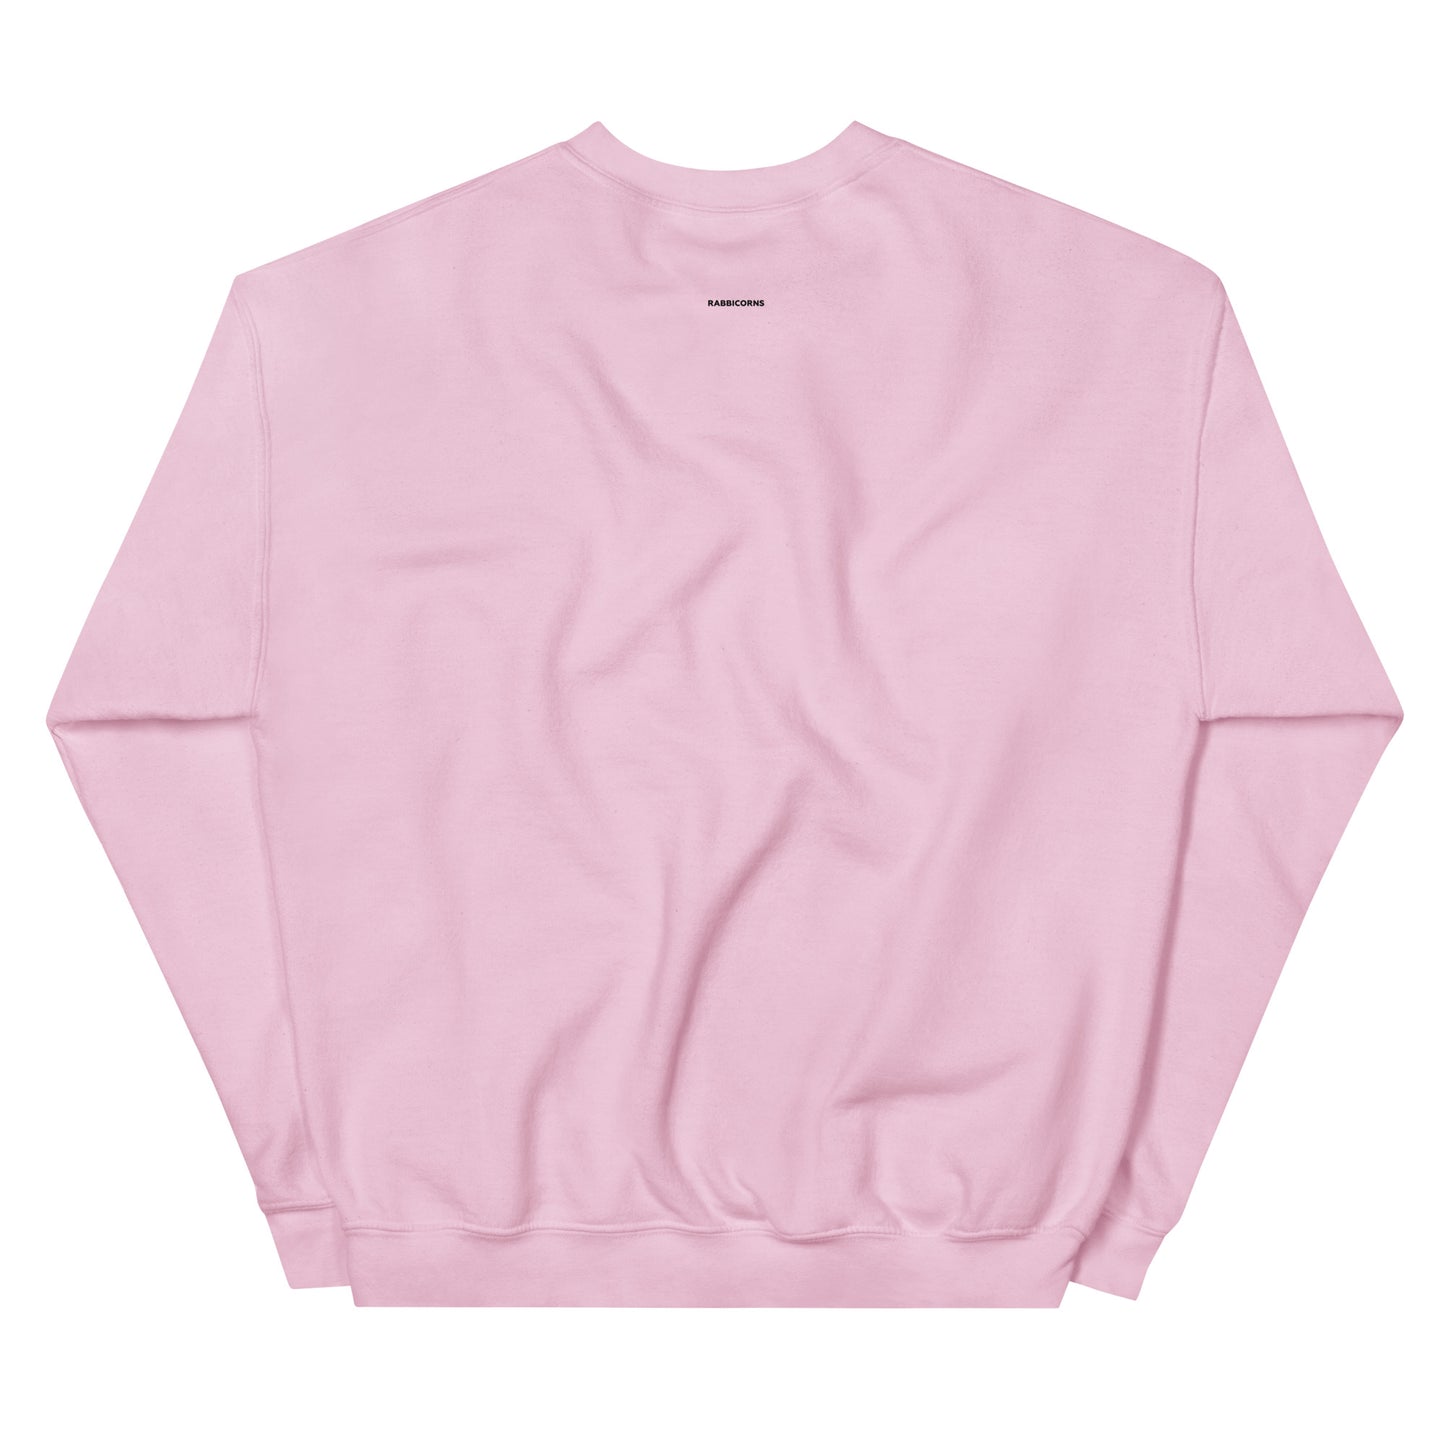 The Bondage Rabbit Pink Unisex Sweatshirt